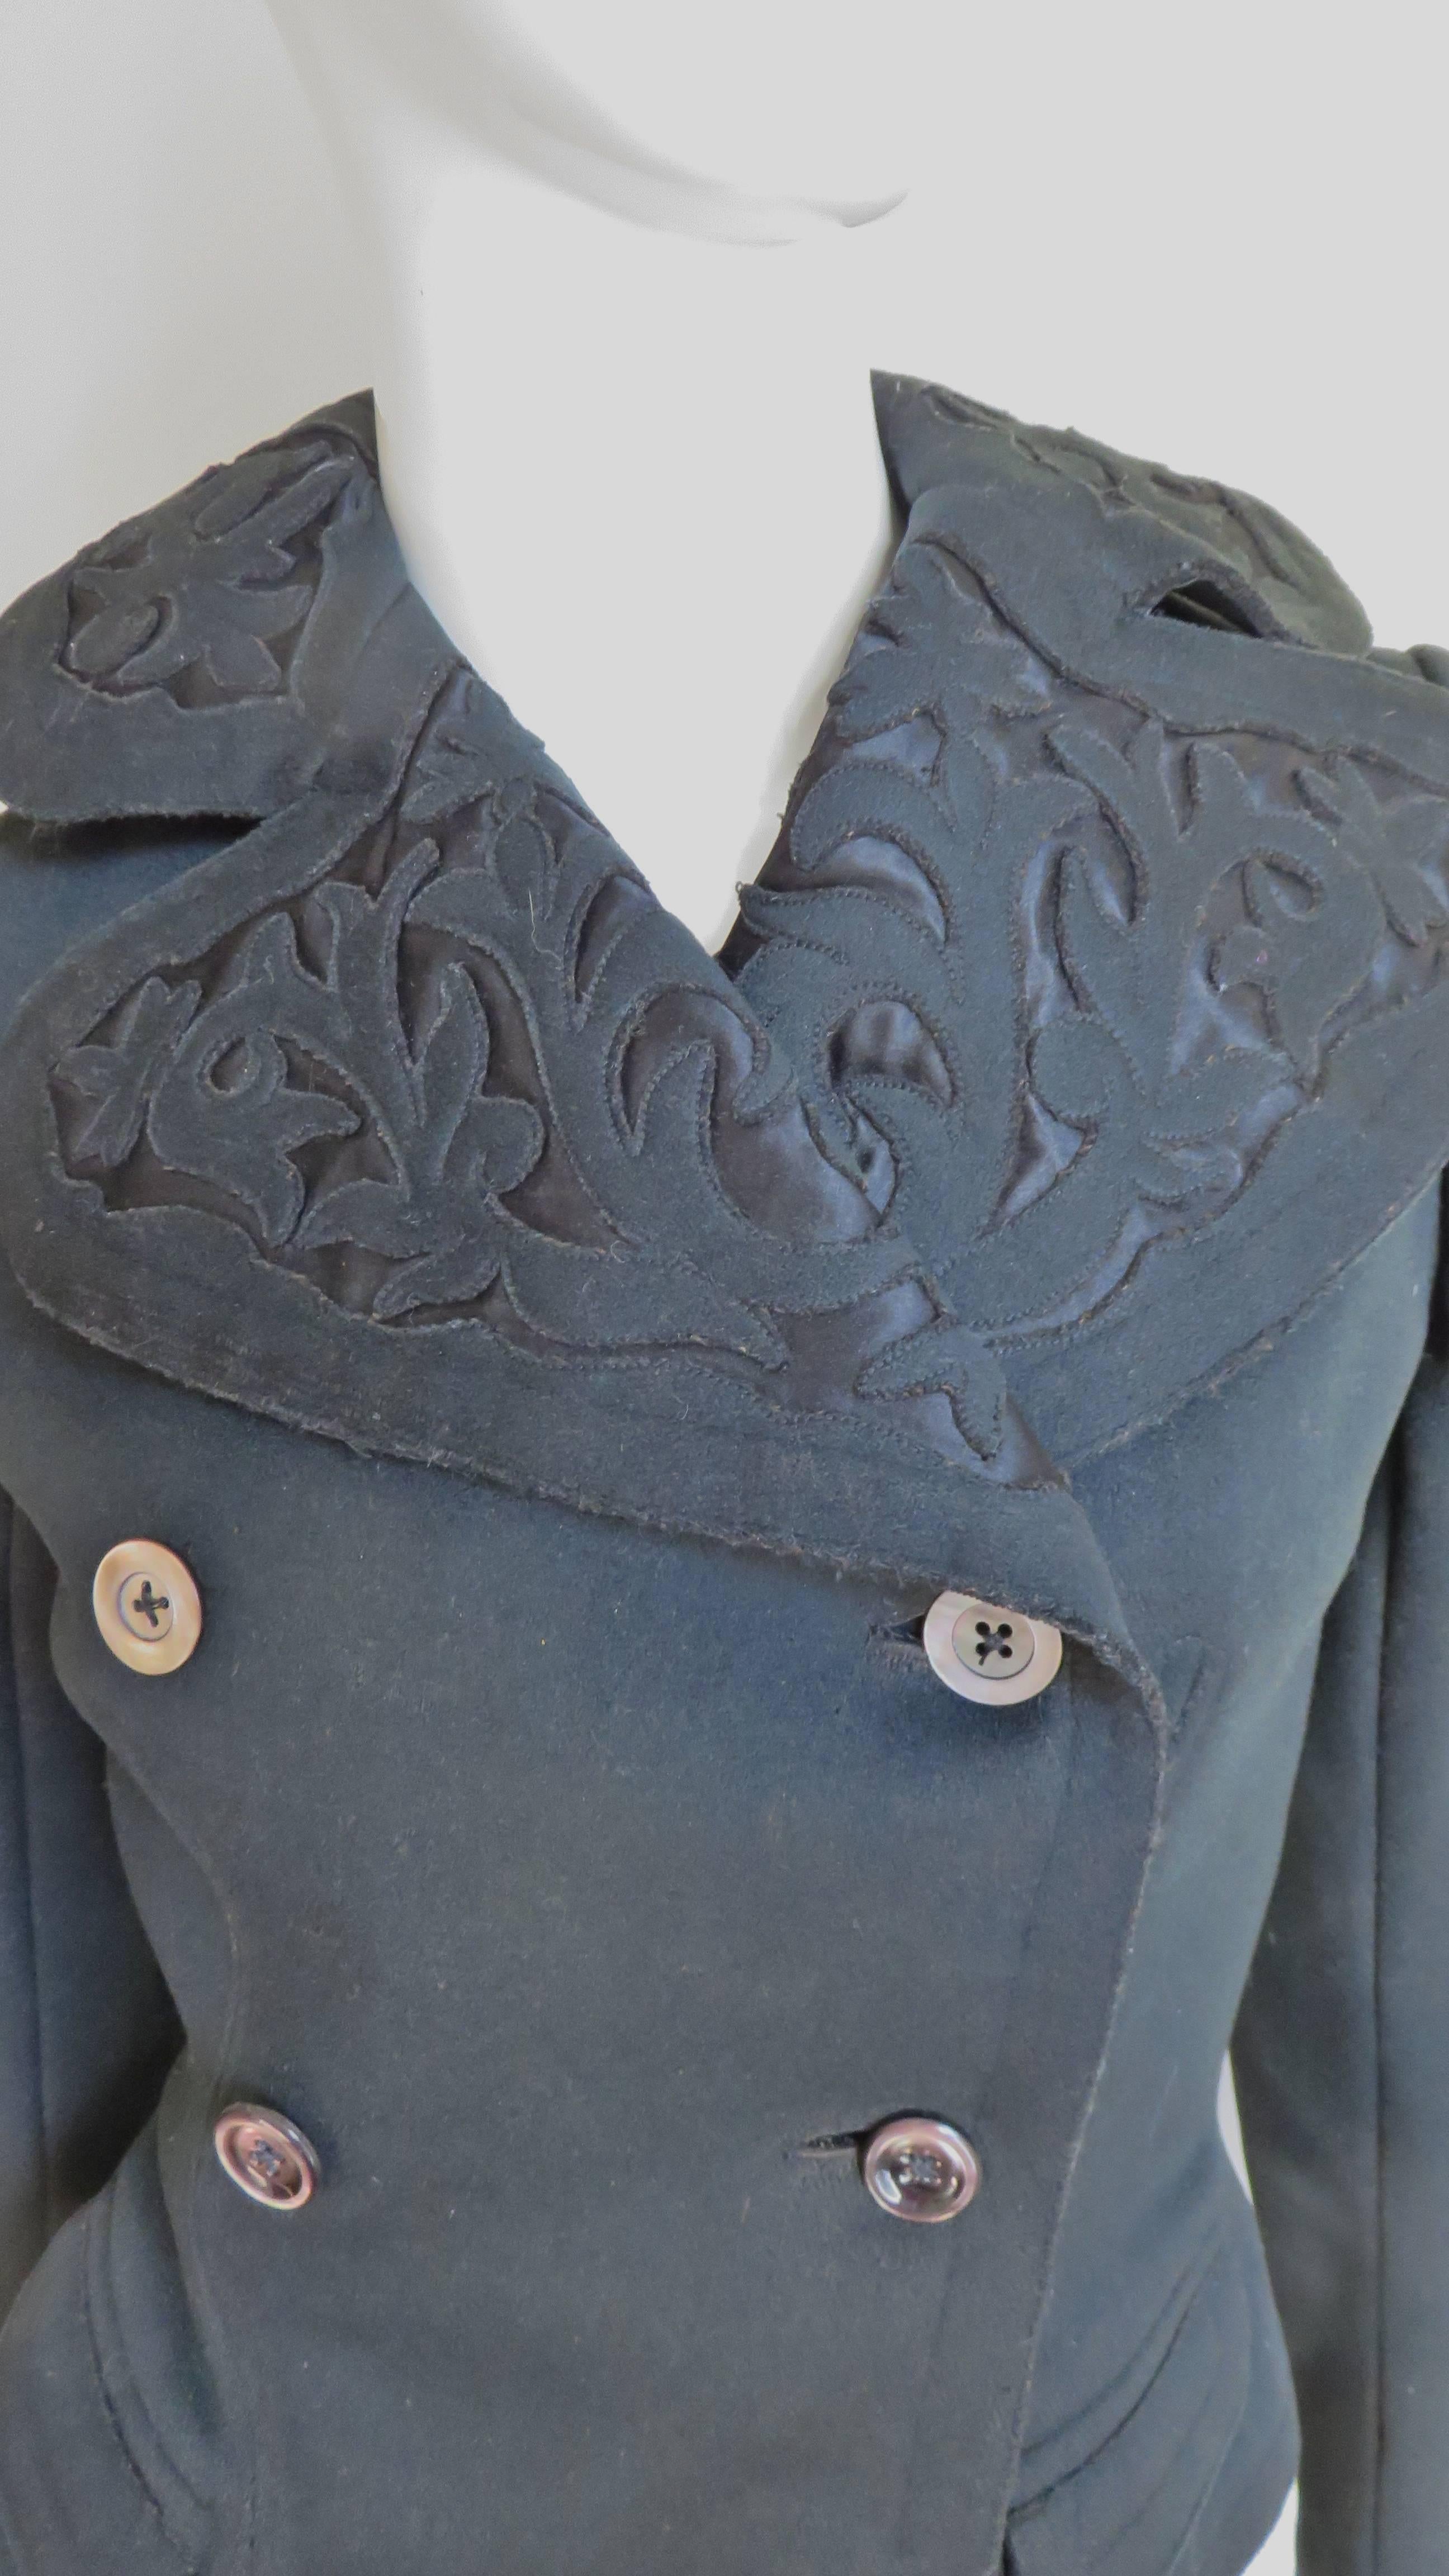 Eine unglaubliche reiche schwarze Wolle doppelreihige Jacke aus den frühen 1900er Jahren.  Es hat lange Ärmel, kleine Paspeltaschen in der Taille und einen abgerundeten Reverskragen mit aufwendig geschnittener, applizierter Wolle. Die Details sind